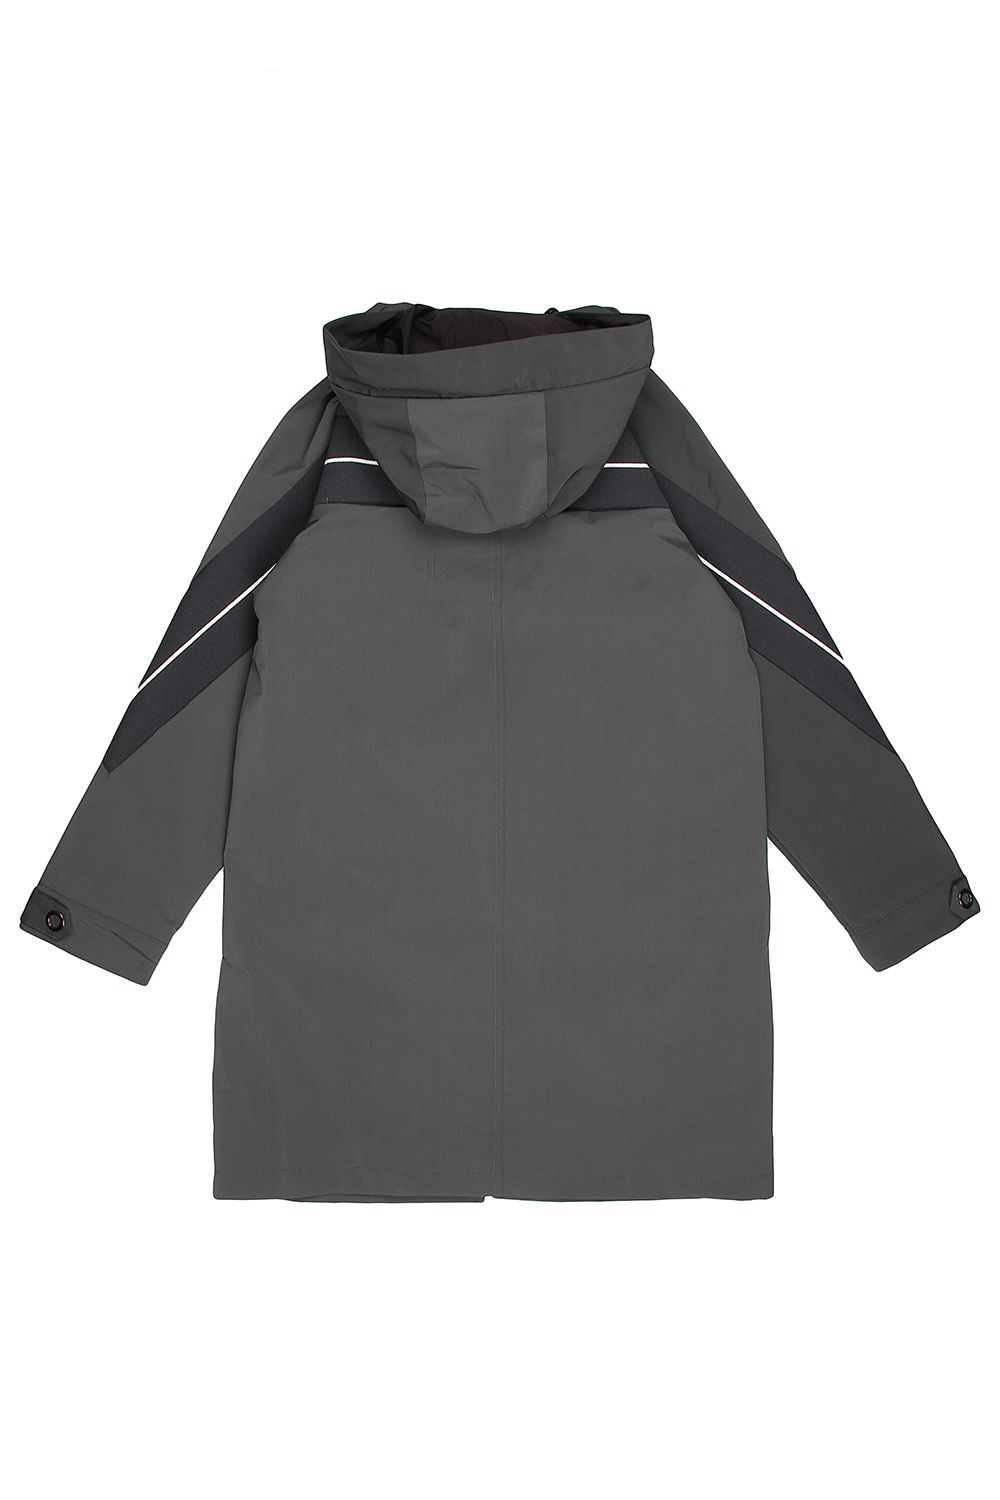 Куртка Noble People, размер 134, цвет серый 18607-518 - фото 3